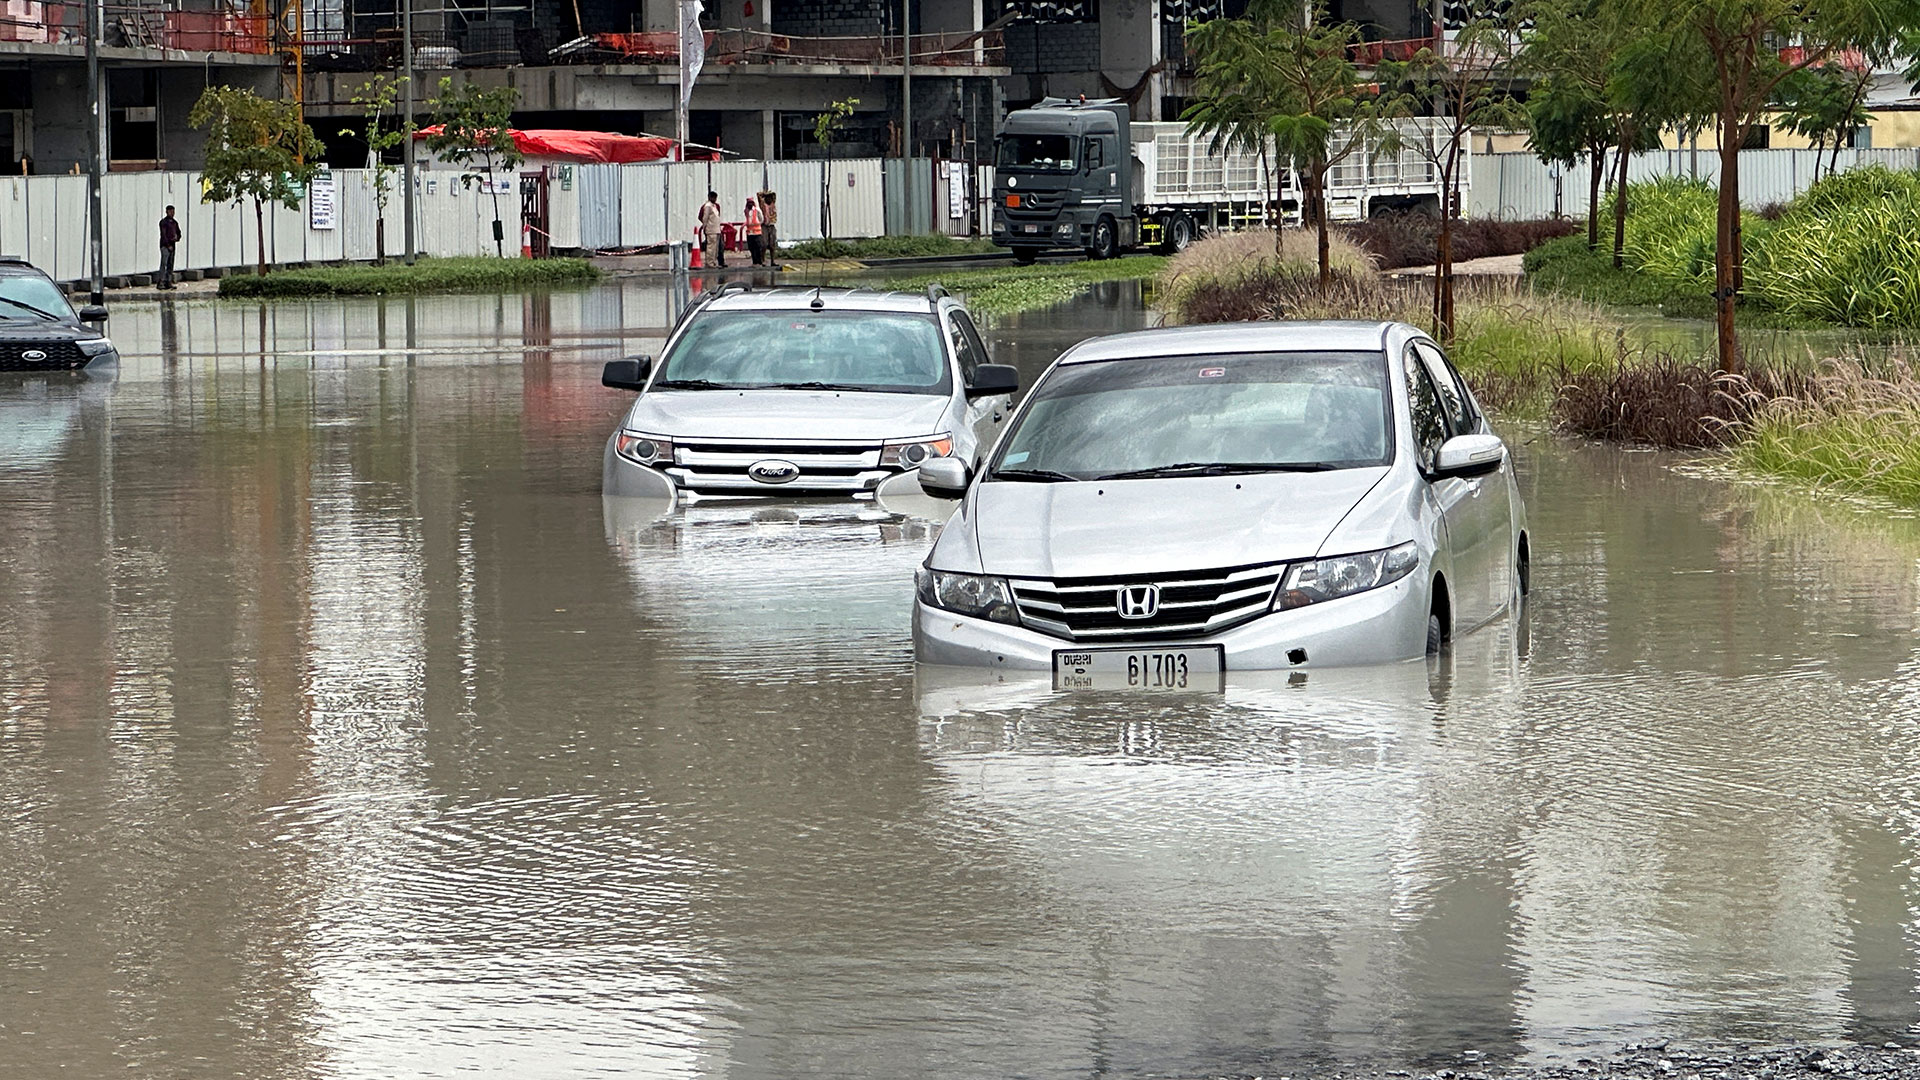 πλημμύρες στο ντουμπάι από σφοδρές νεροποντές